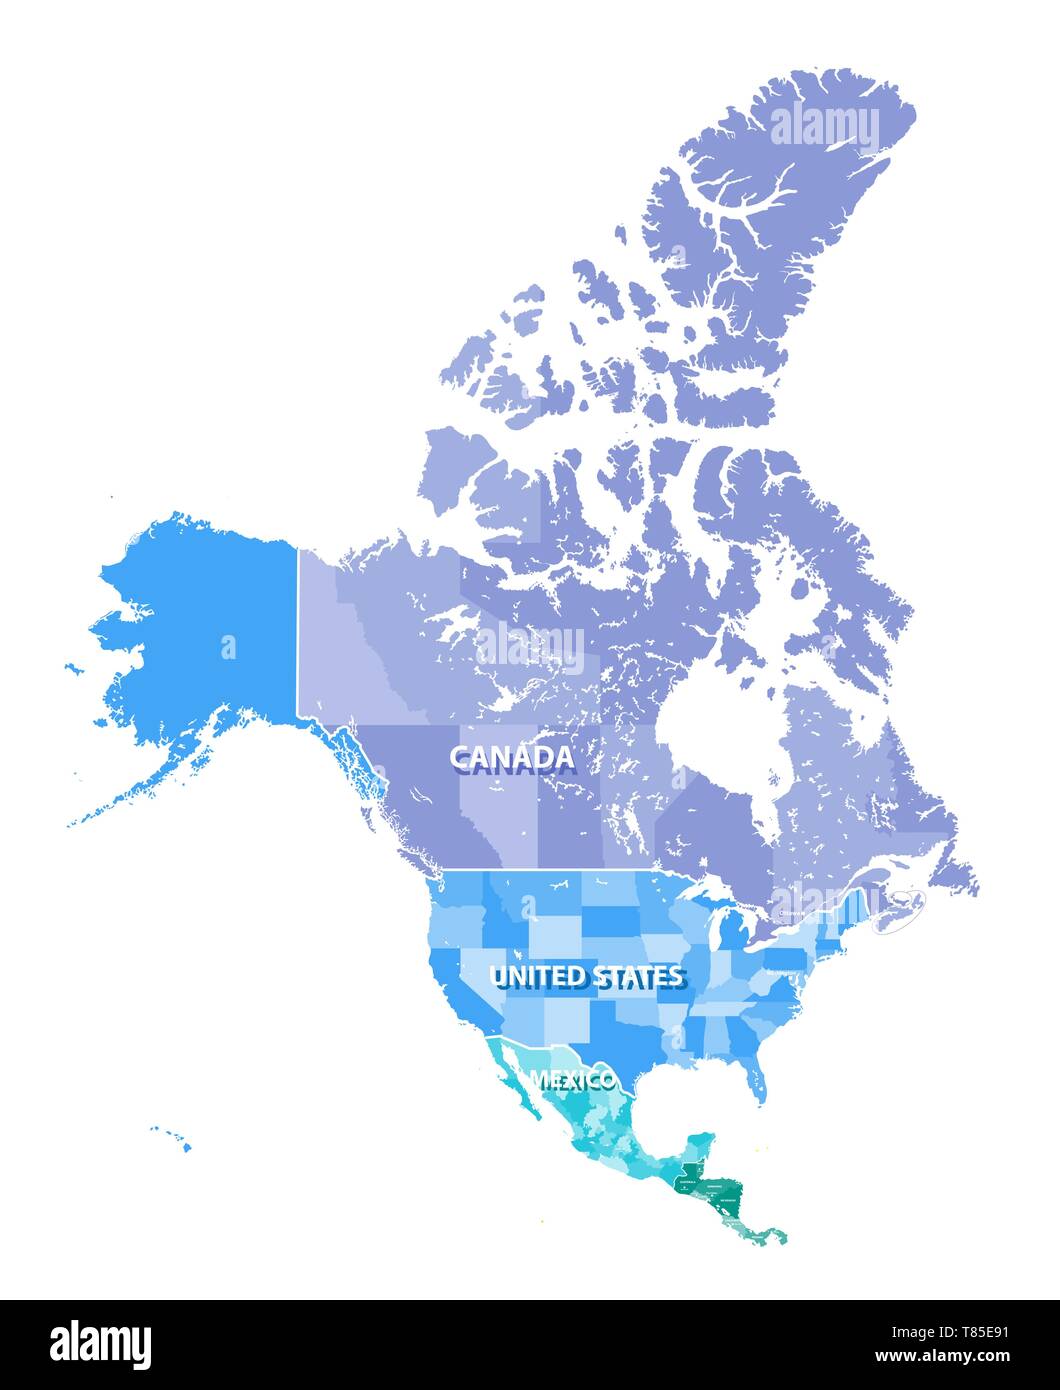 Amérique du Nord carte vectorielle très détaillés avec les États frontières du Canada, États-Unis et Mexique Illustration de Vecteur